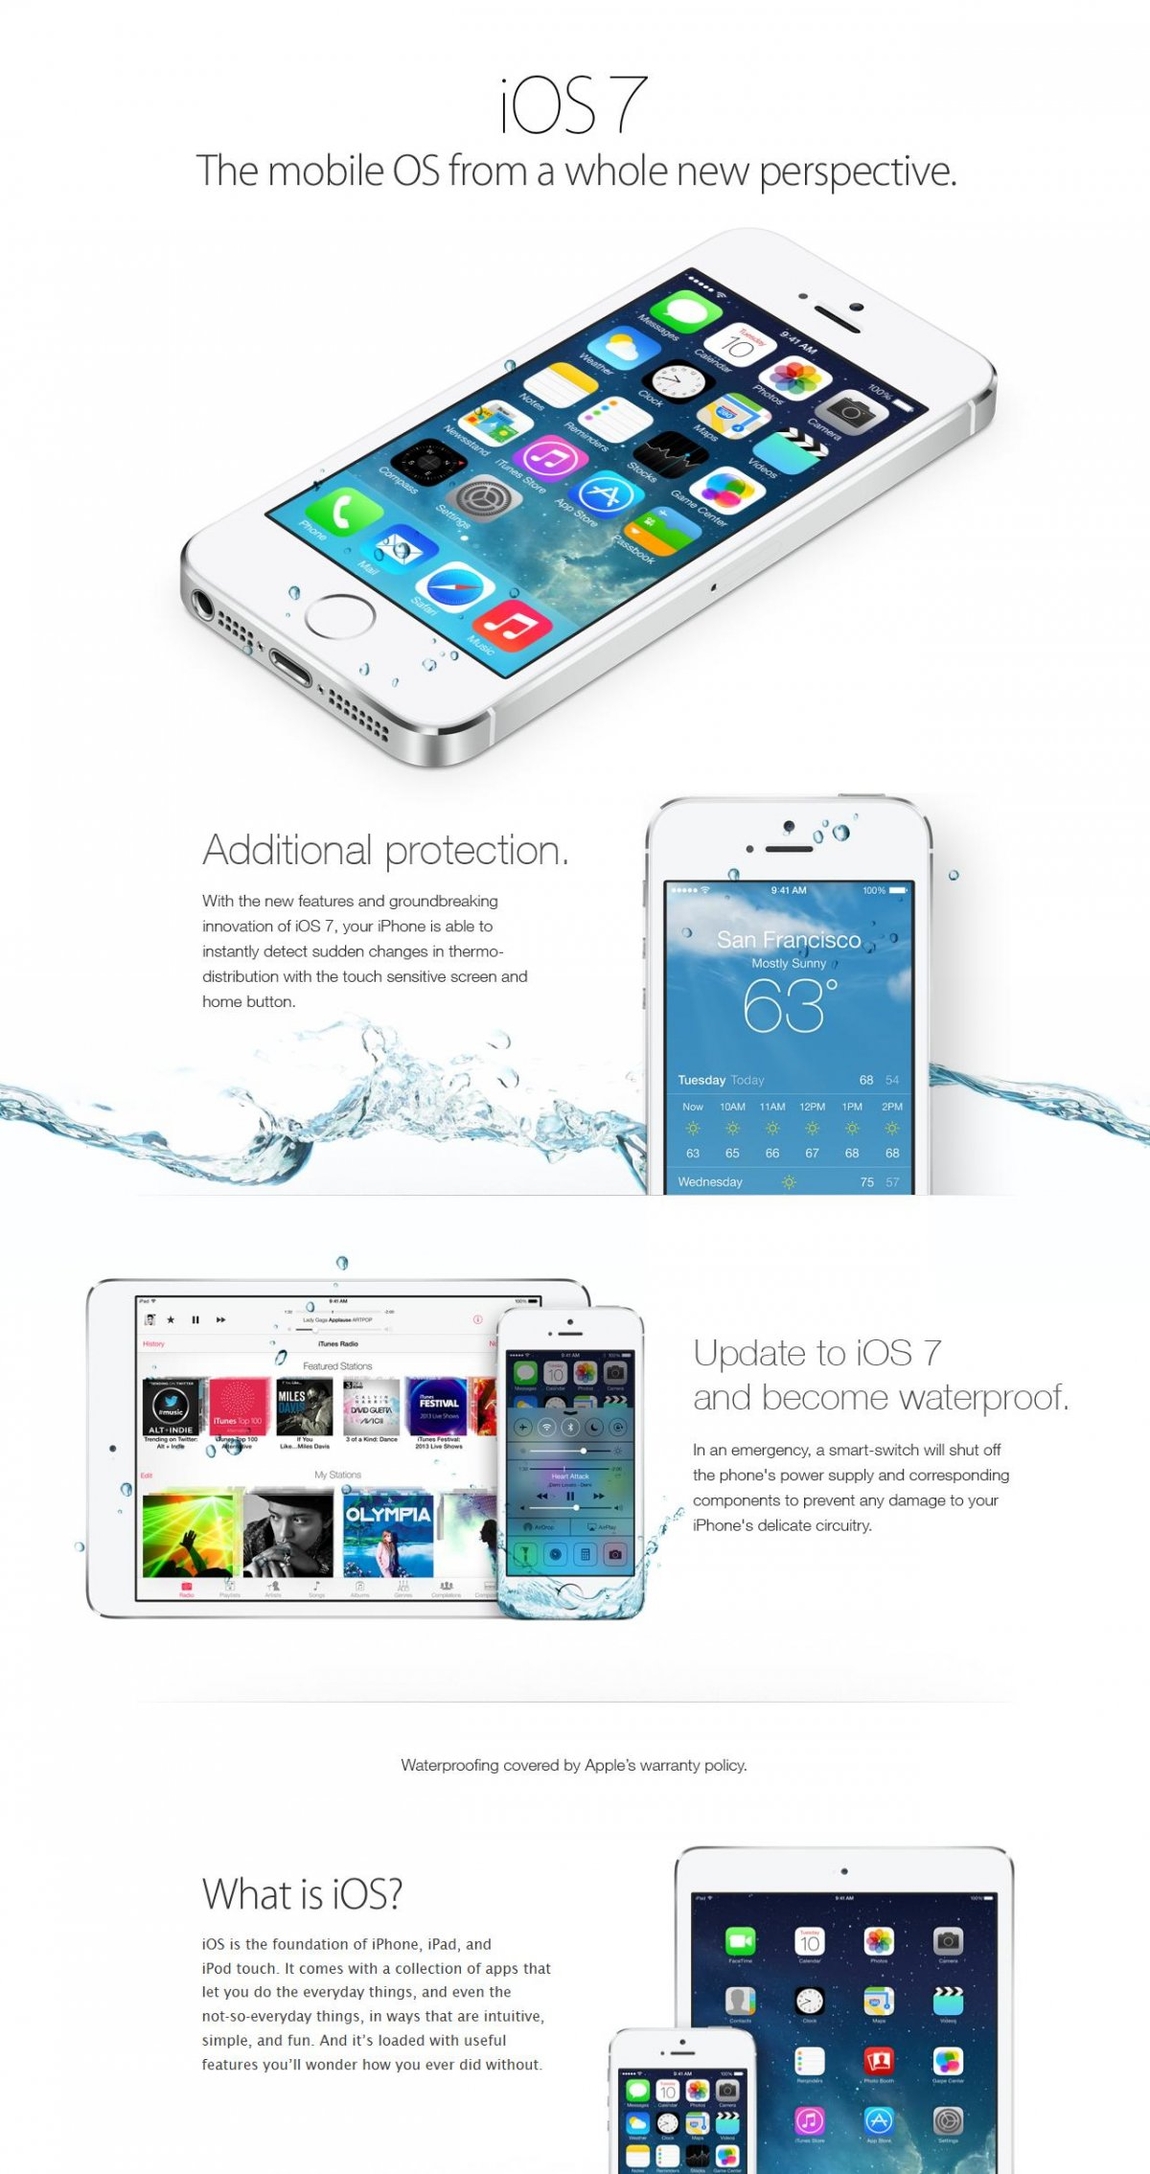 В сети распространилась фейковая реклама Apple, которая призывает пользователей обновить IOS 7, сделав смартфон водонепроницаемым.